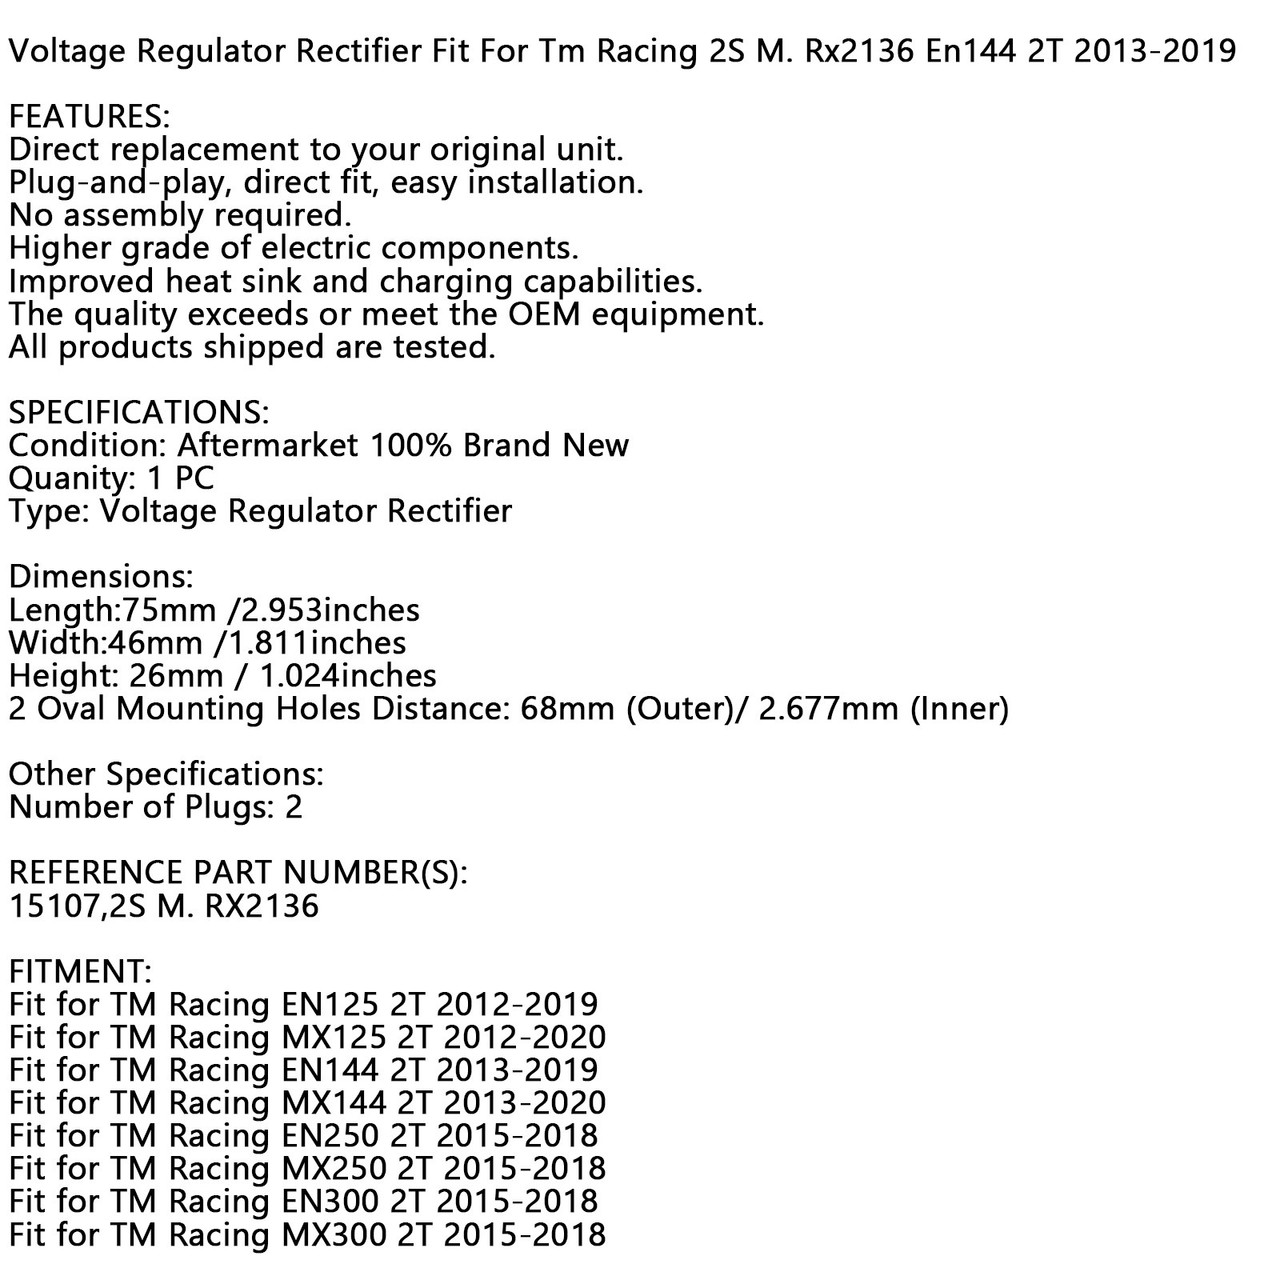 Voltage Regulator Rectifier Fit For Tm Racing EN125 2T 12-19 MX125 2T 12-20 EN144 2T 13-19